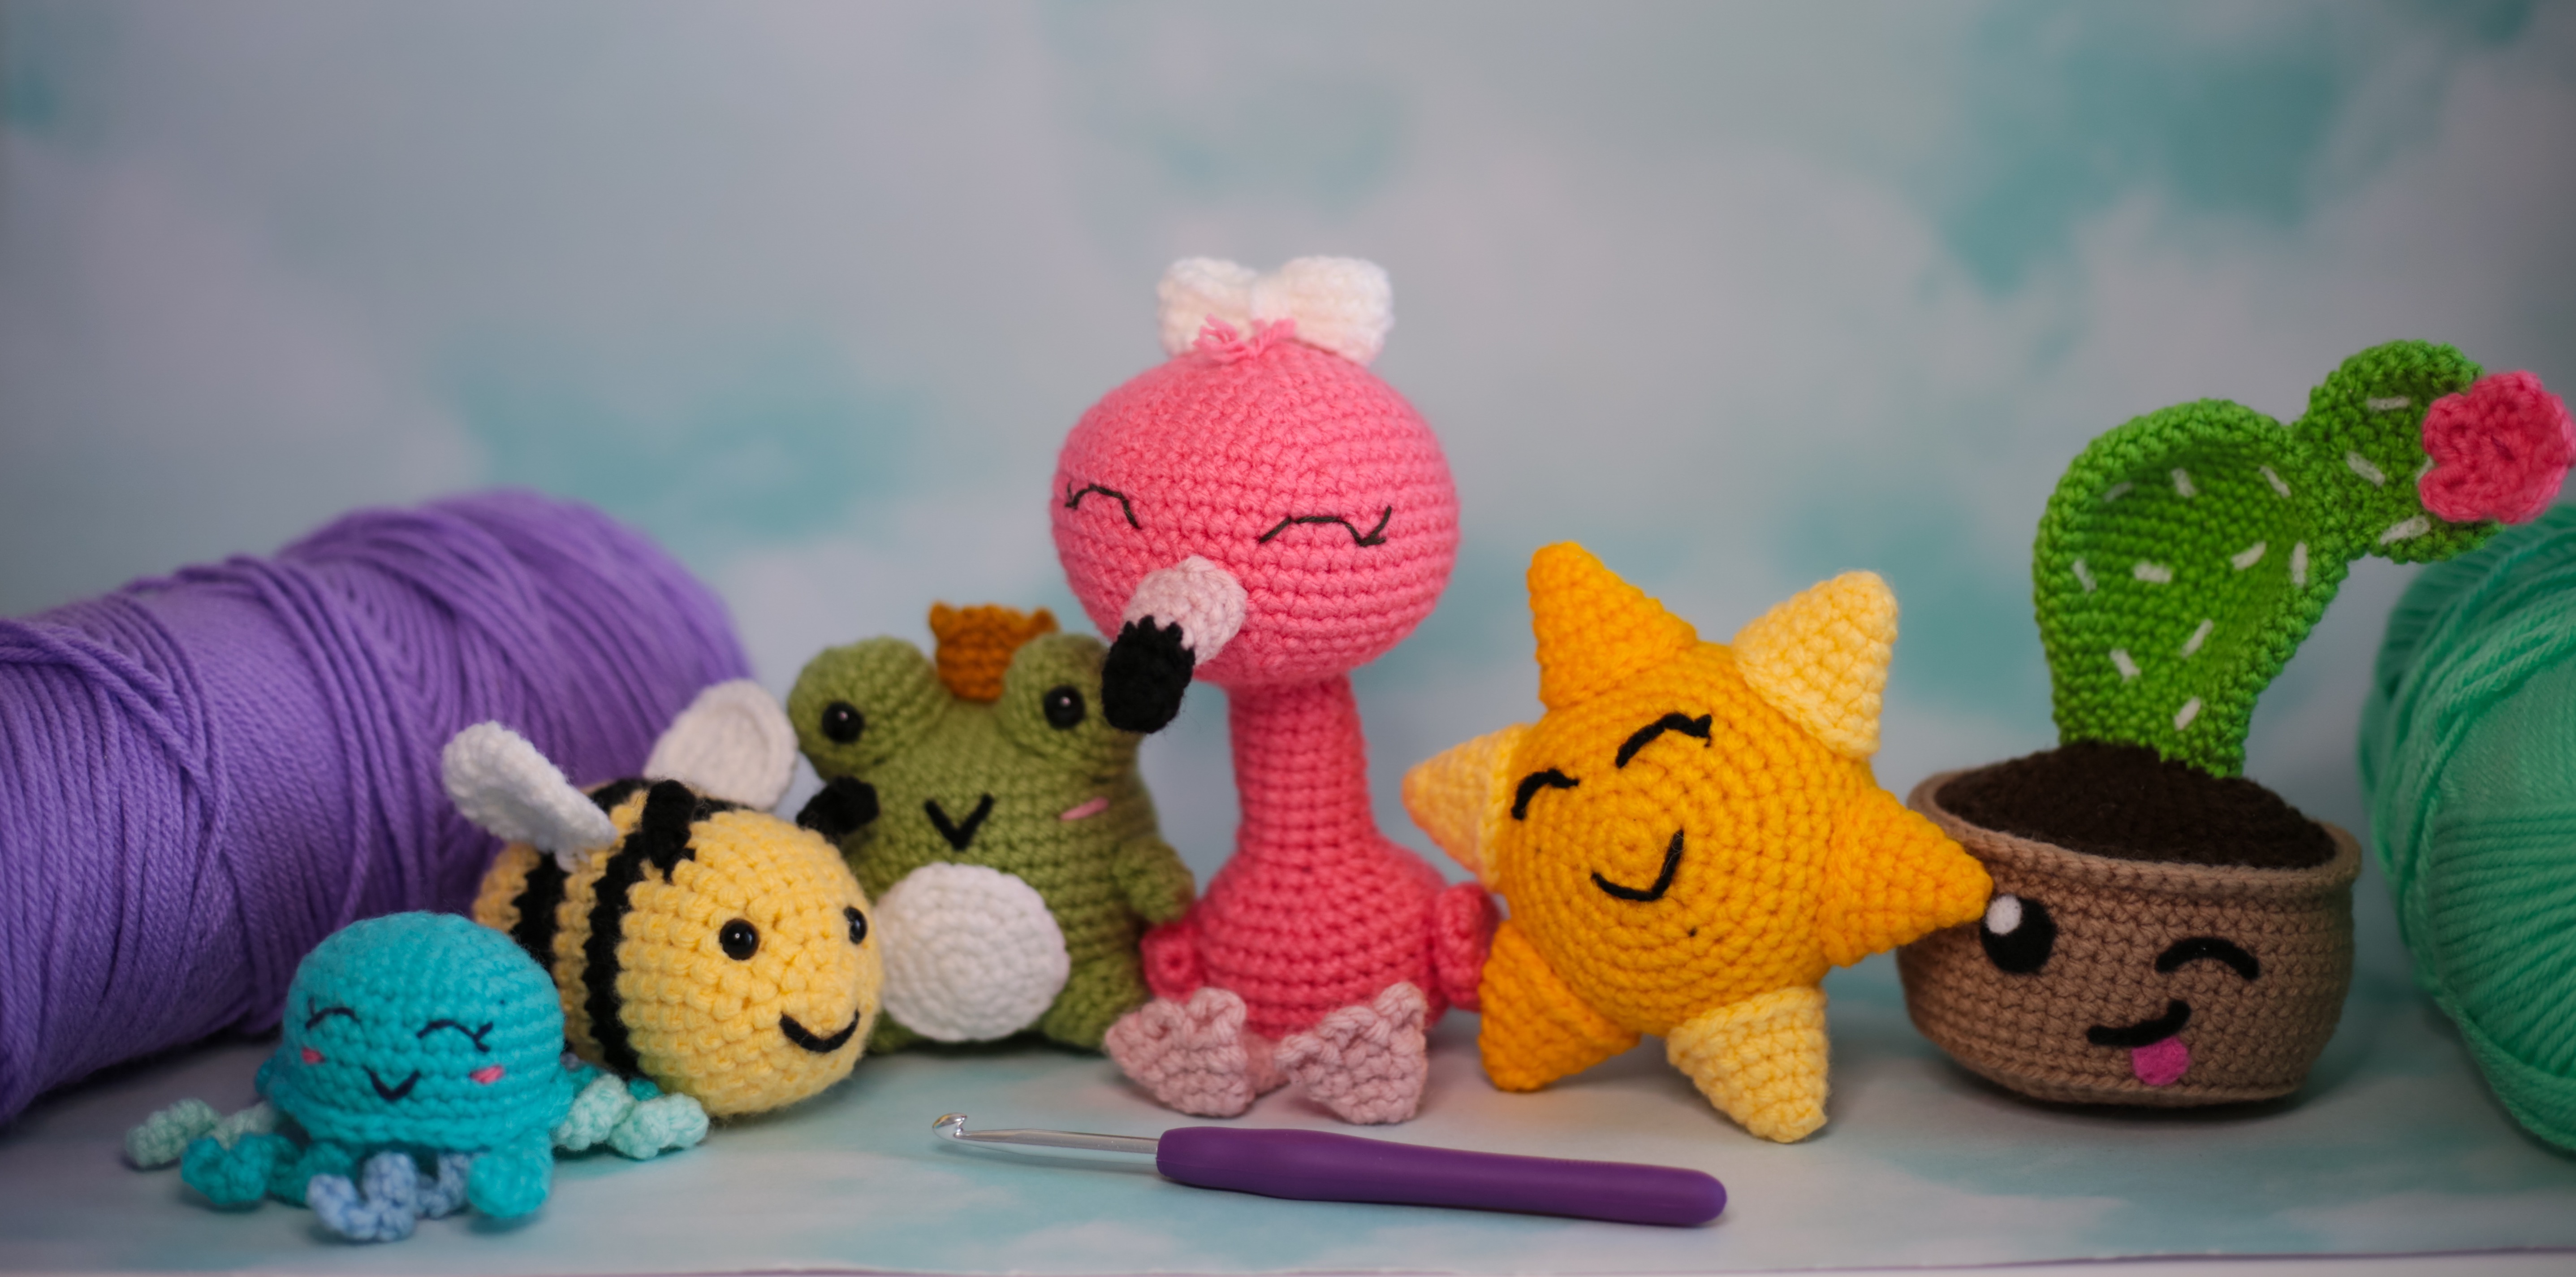 5 Must-Know Beginner Amigurumi Skills To Make Any Crochet Plushie